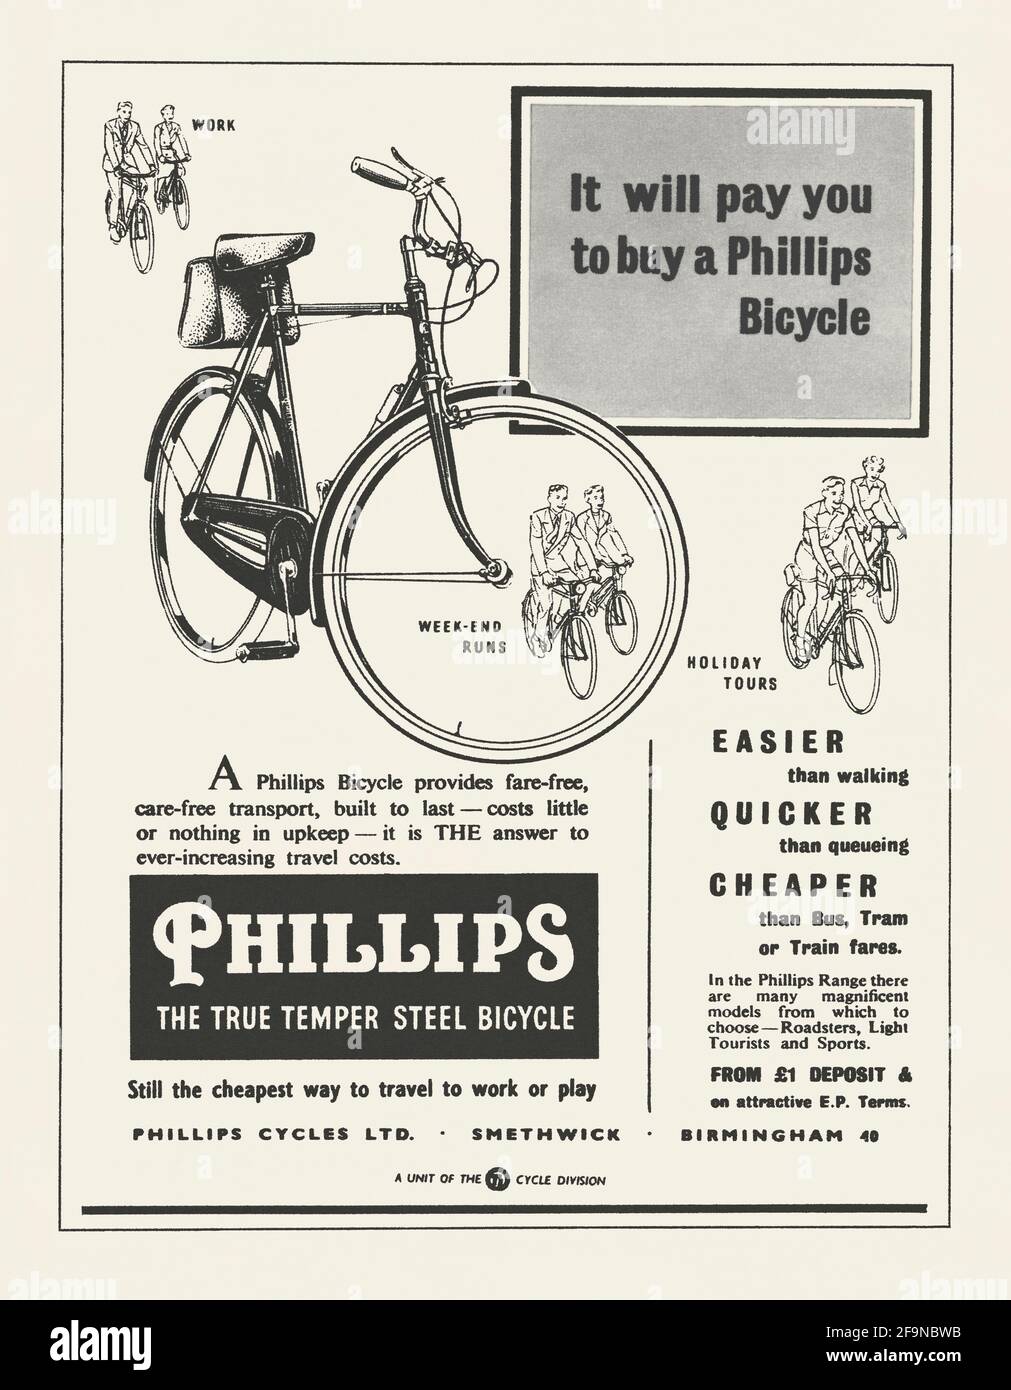 Un anuncio de 1950s para bicicletas Phillips – apareció en la revista  británica en 1956. Las ilustraciones y las palabras enfatizan el ahorro de  costos que podría hacerse al montar en bicicleta